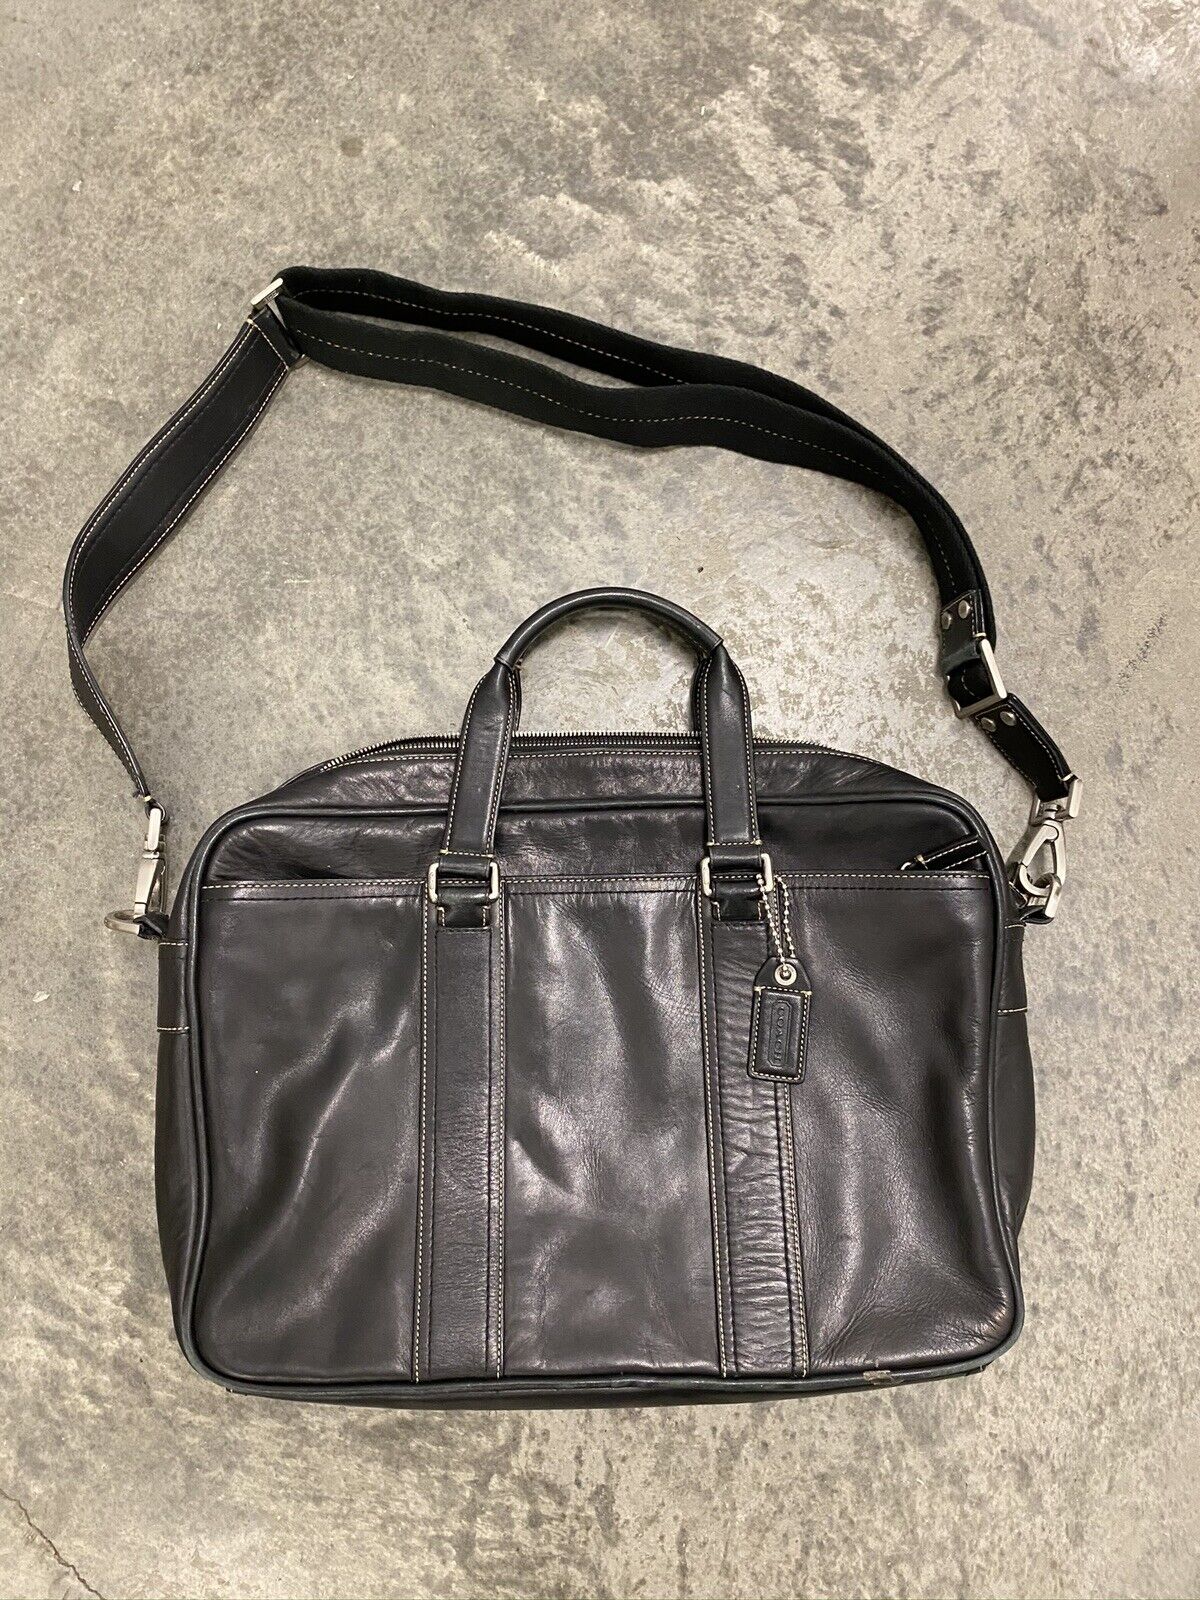 Vintage Classic Coach Black Leather Briefcase Laptop Messenger Bag 🖤